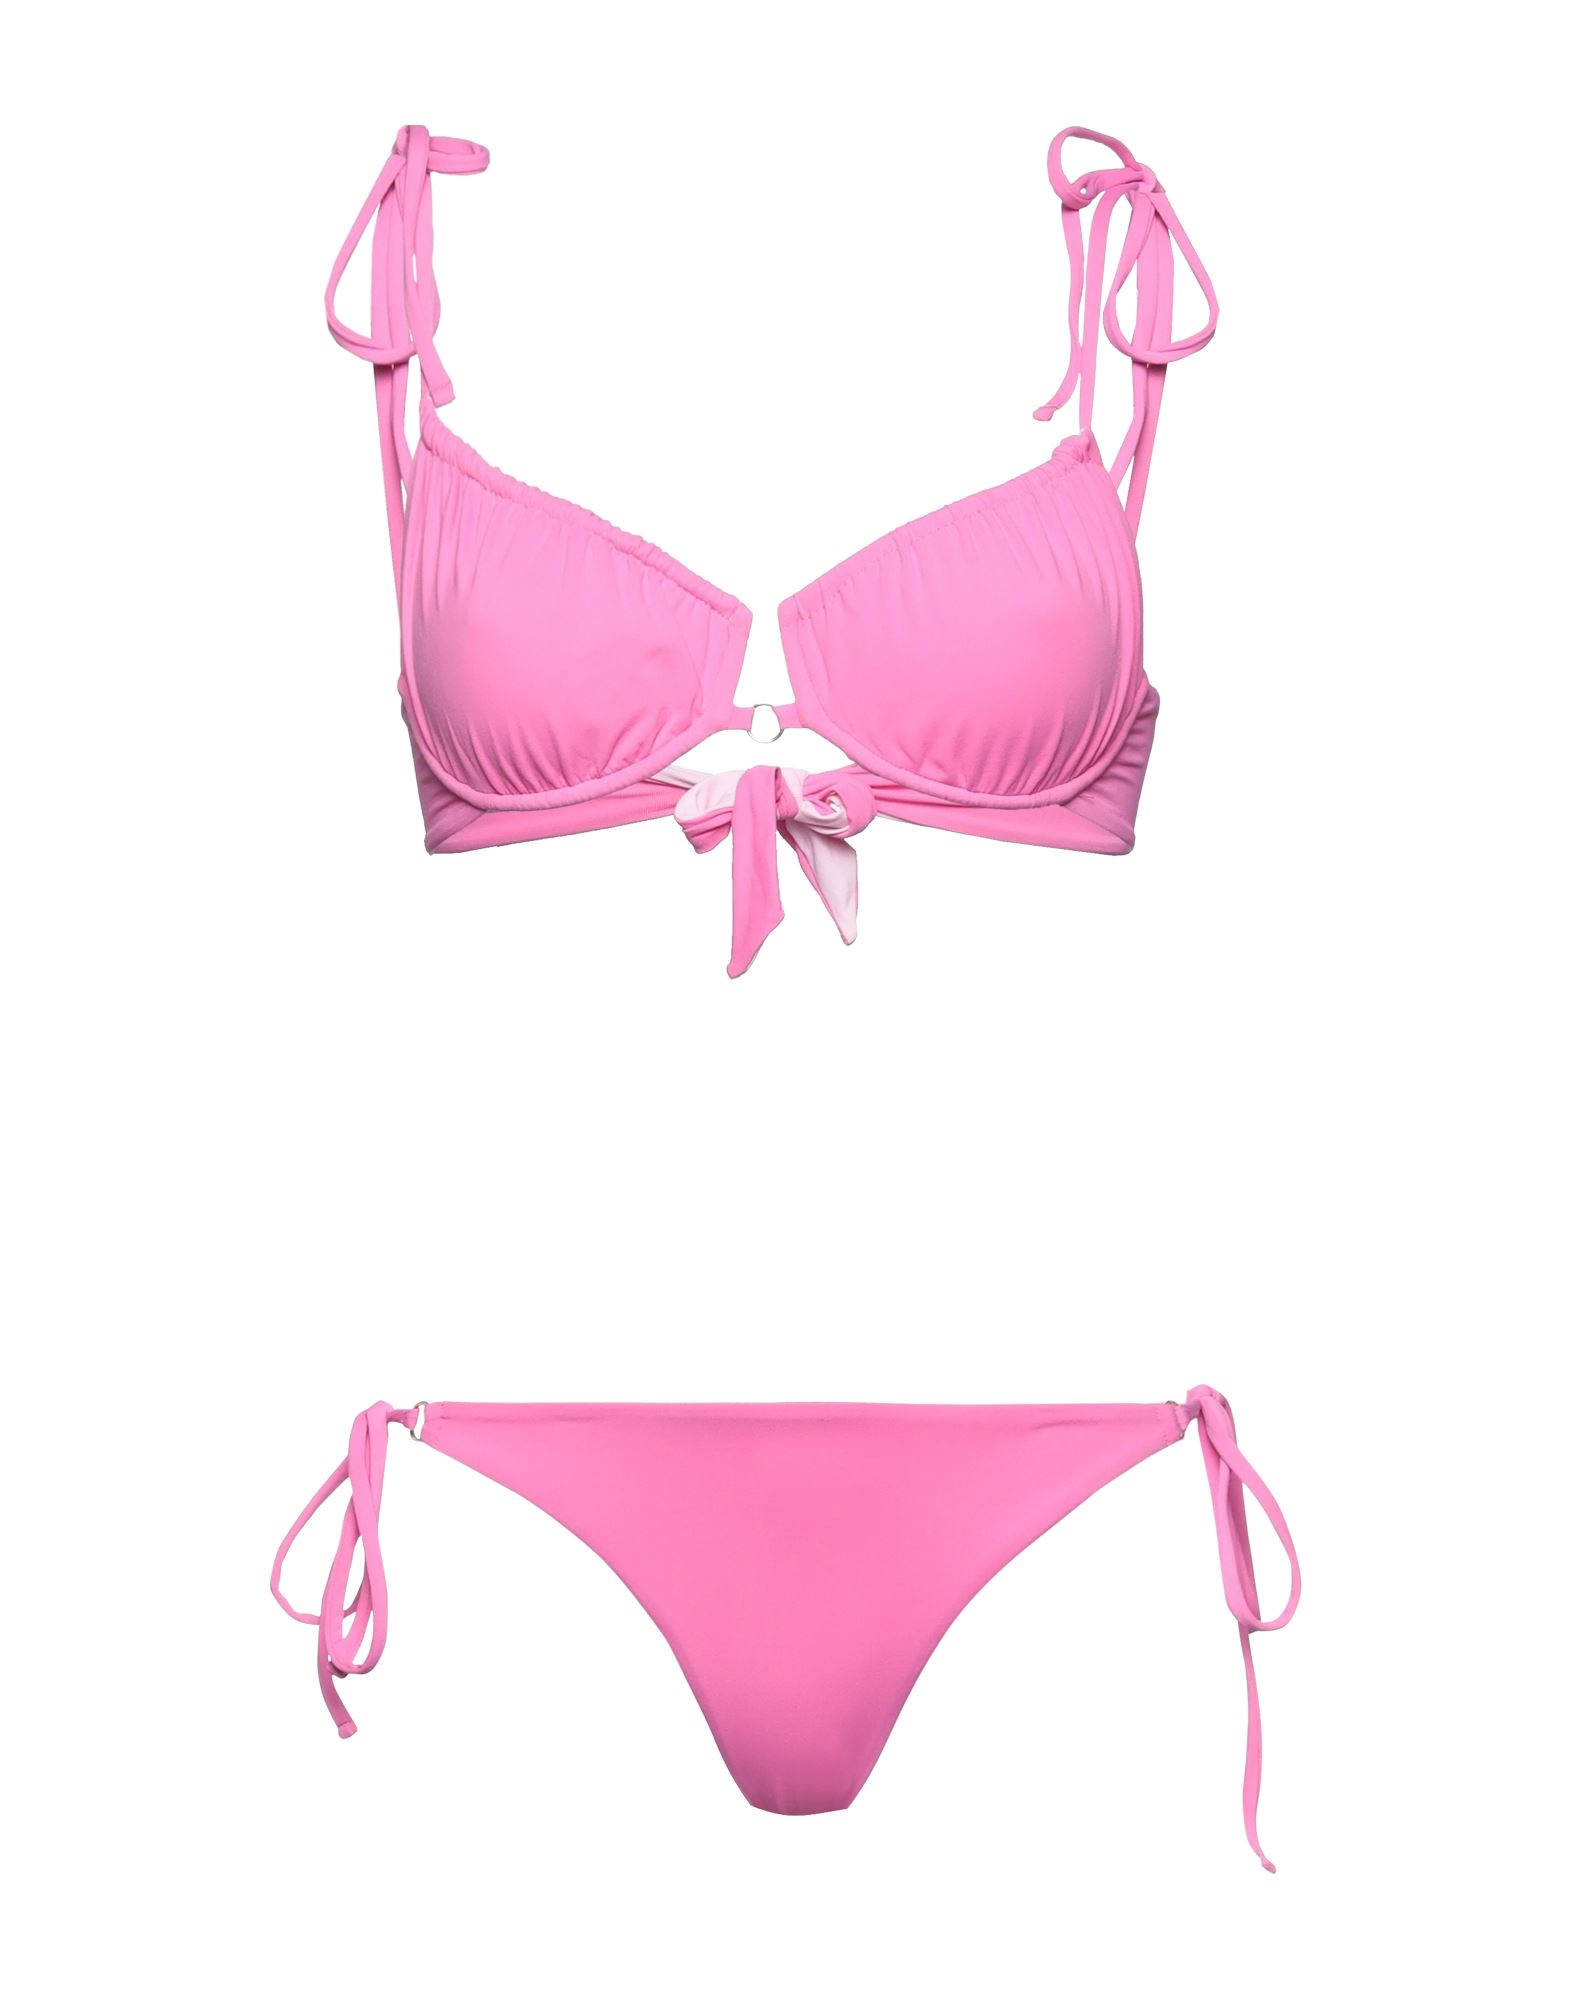 Iu Rita Mennoia Bikinis In Pink